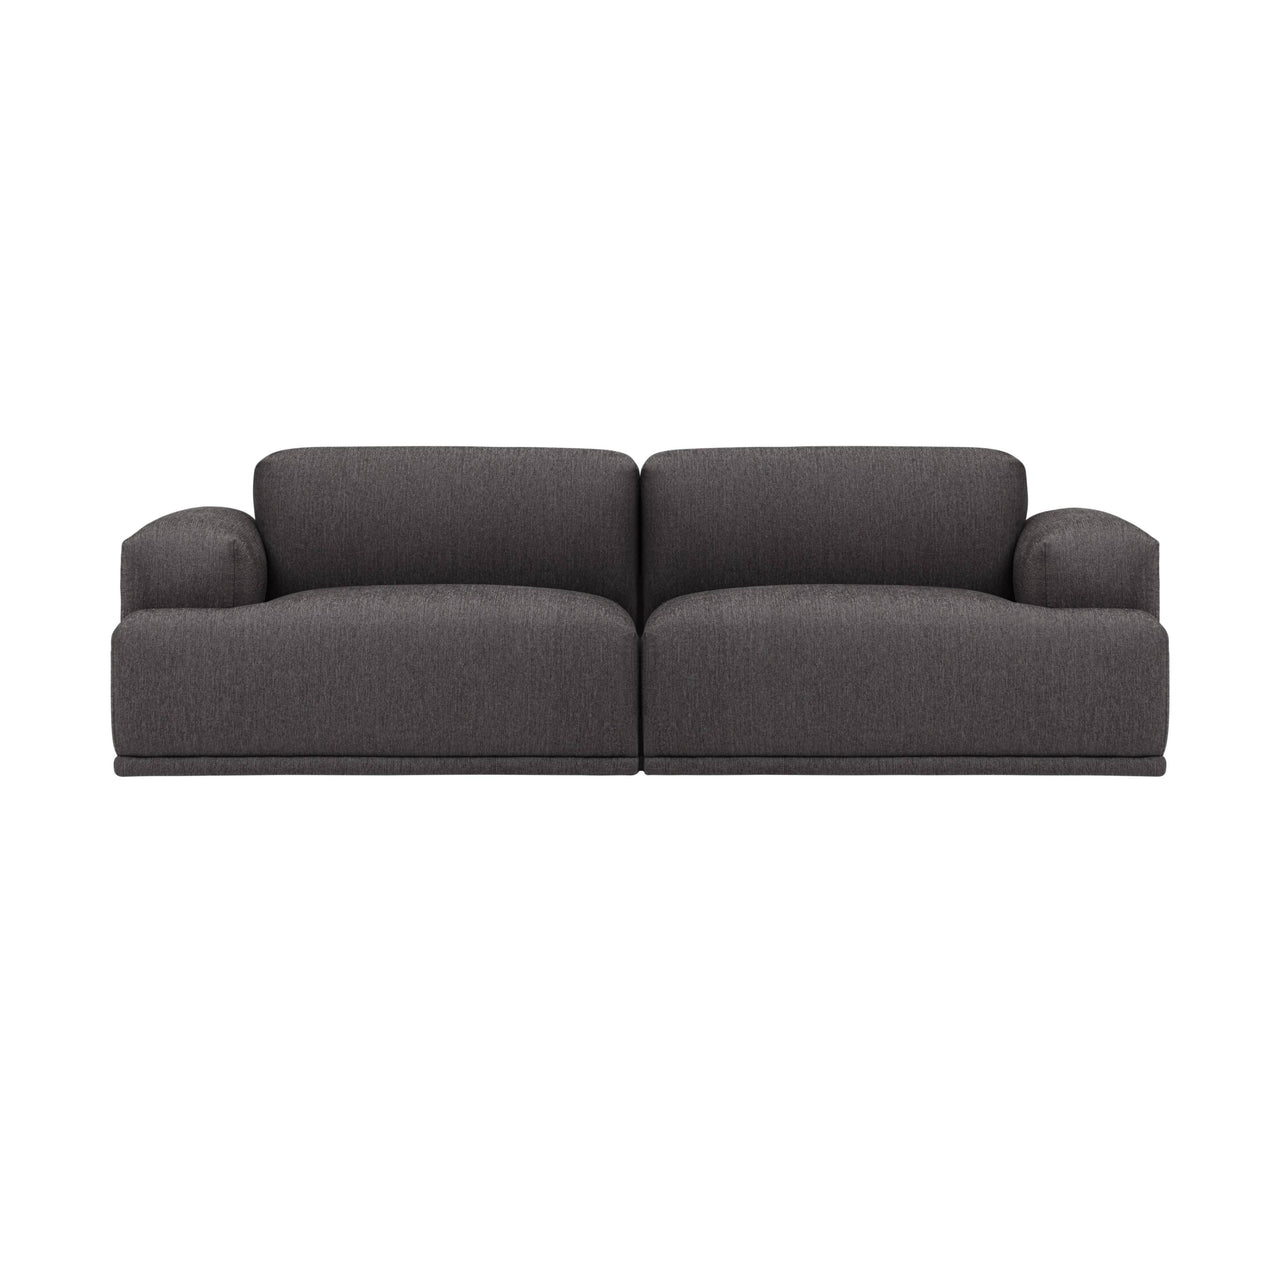 Connect Modular Sofa: Modules A+B